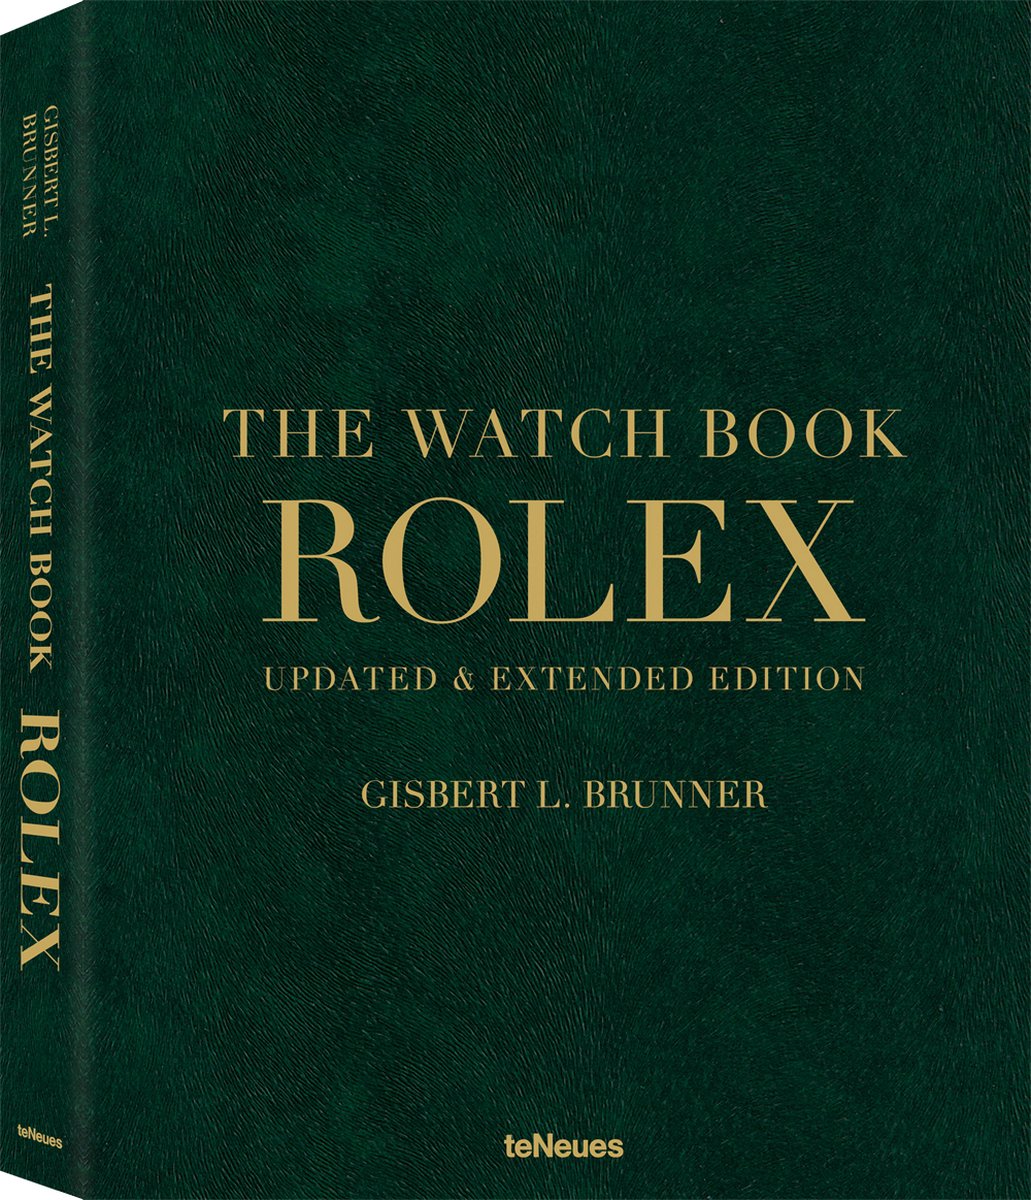 Rolex: The Watch Book, New, Extended Edition - Brunner, Gisbert L.